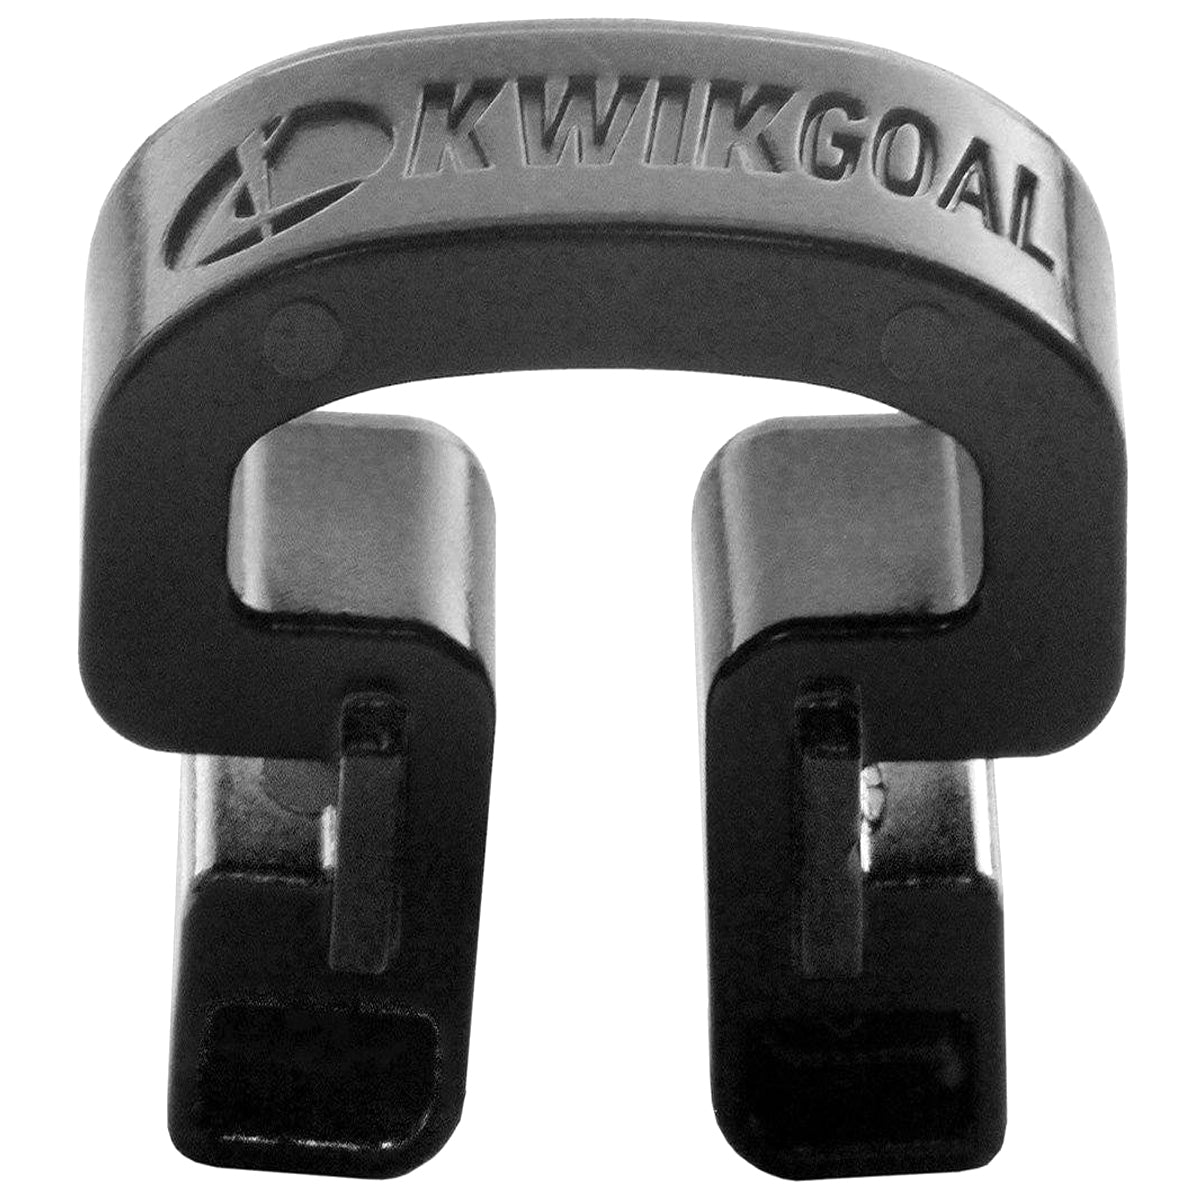 Kwikgoal Kwik Lock Net Clips - 100 Pack | 10B31 Goal accessories Kwikgoal Black 